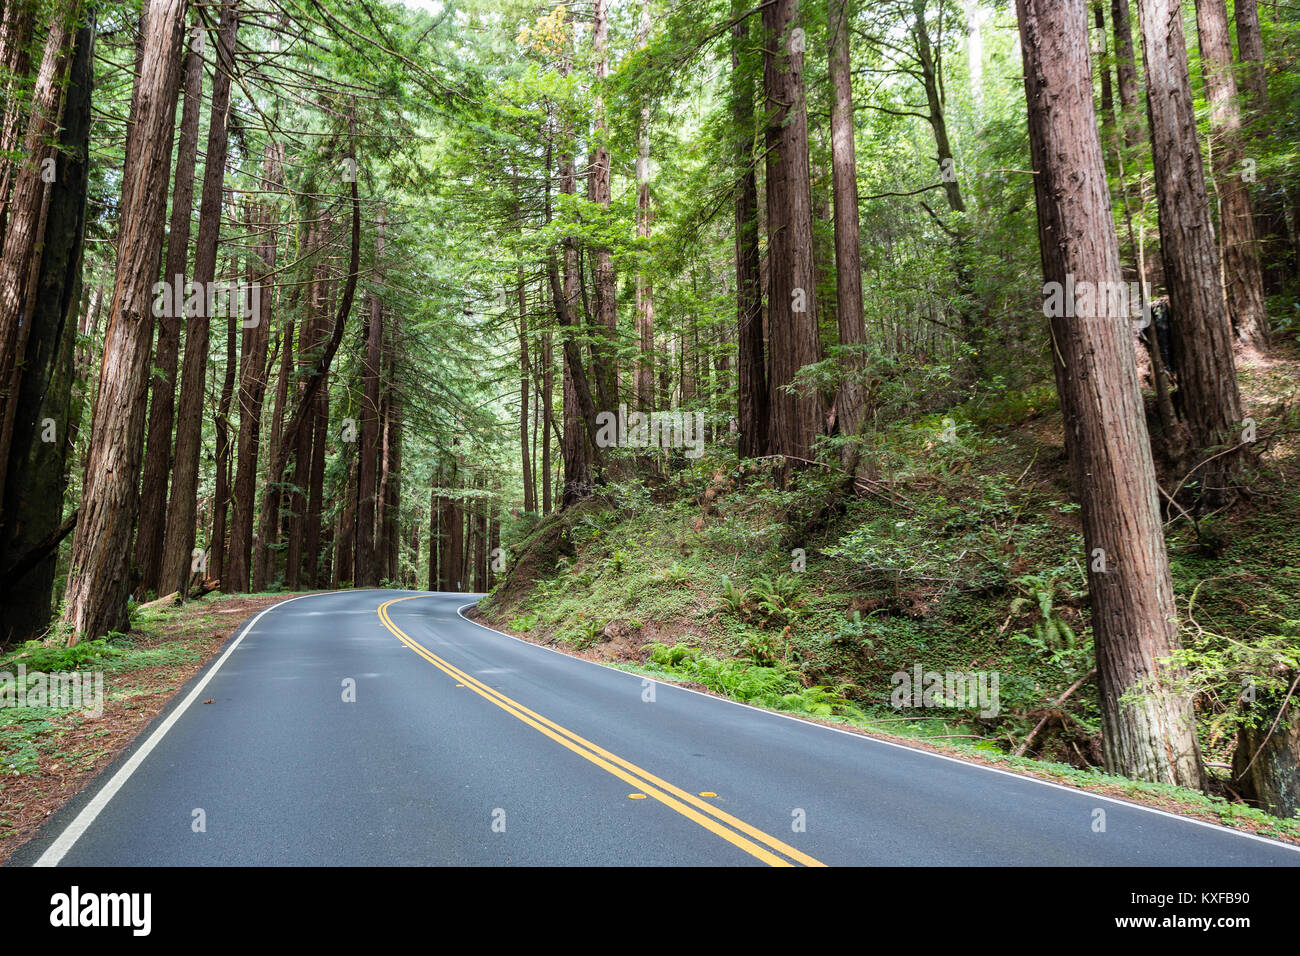 La ruta estatal 128 serpentea a través de los altos árboles, incluidos los árboles Redwood, en el condado de Mendocino, California. Foto de stock